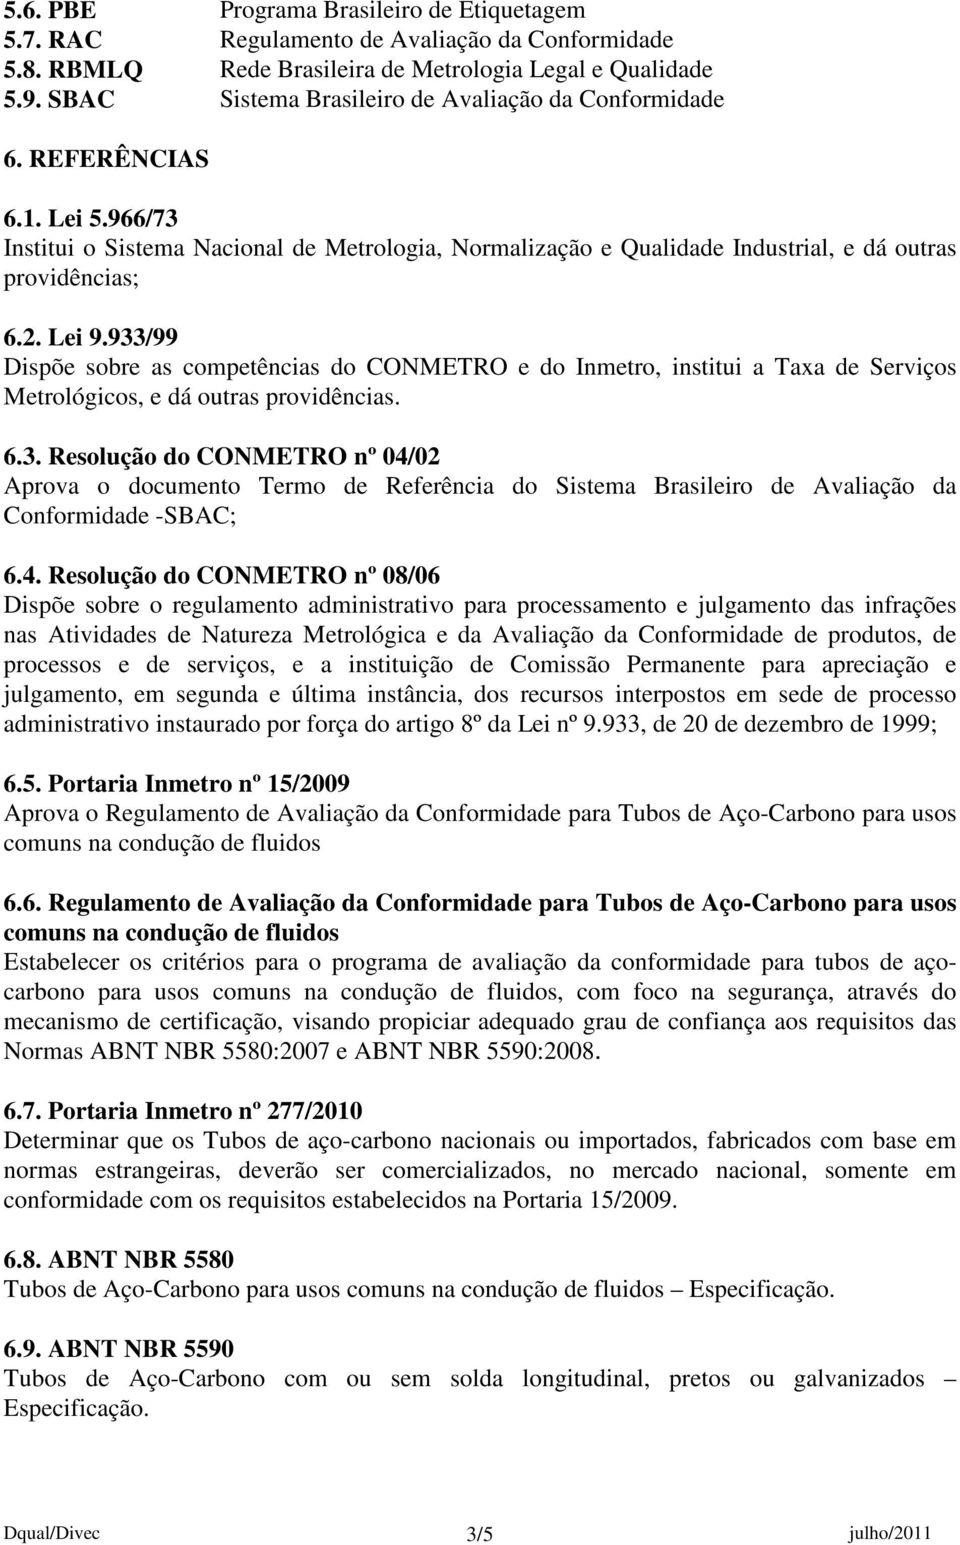 Lei 9.933/99 Dispõe sobre as competências do CONMETRO e do Inmetro, institui a Taxa de Serviços Metrológicos, e dá outras providências. 6.3. Resolução do CONMETRO nº 04/02 Aprova o documento Termo de Referência do Sistema Brasileiro de Avaliação da Conformidade -SBAC; 6.